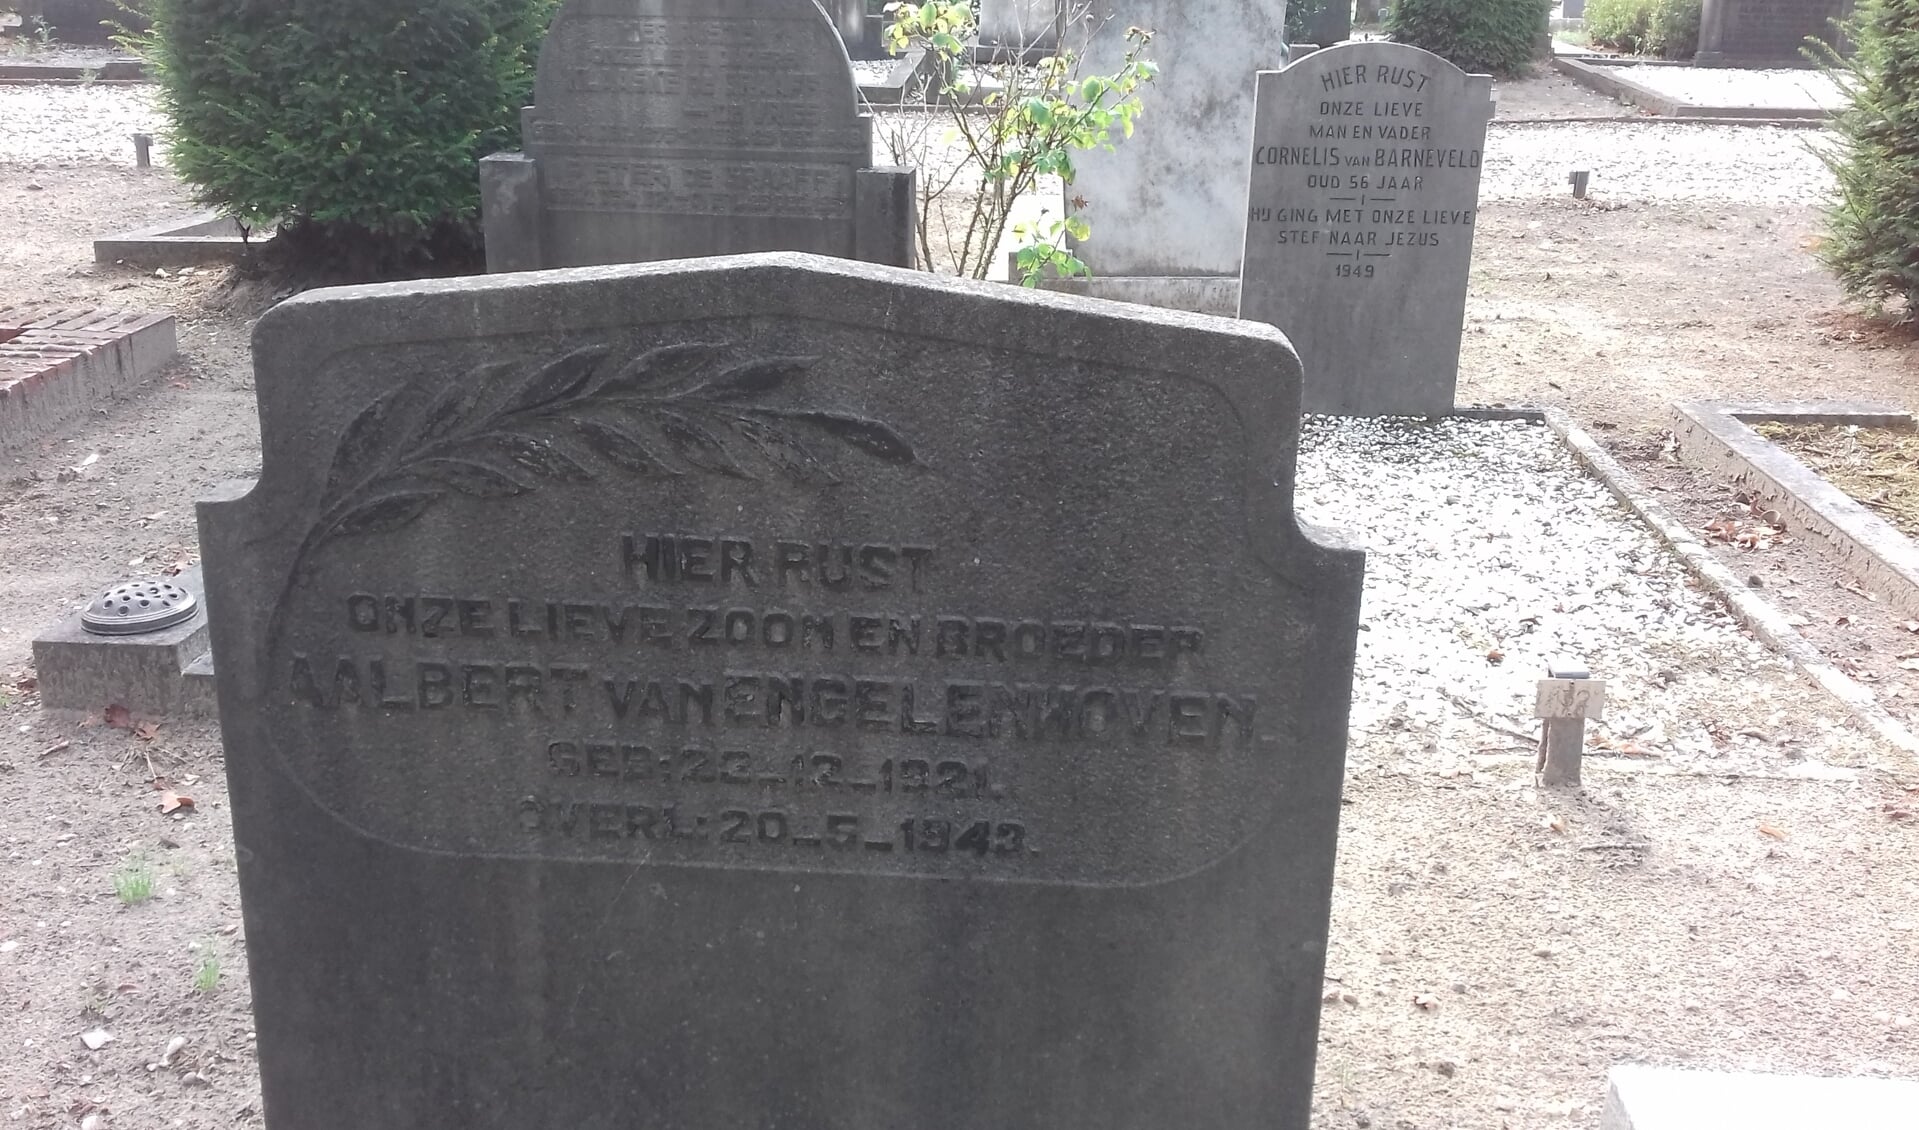 De oorlogsgraven stichting vermeldt hierover: Achternaam Engelenhoven, van | Voornamen Aalbert | Geboren 23-12-1921 | Overleden 20-05-1943.